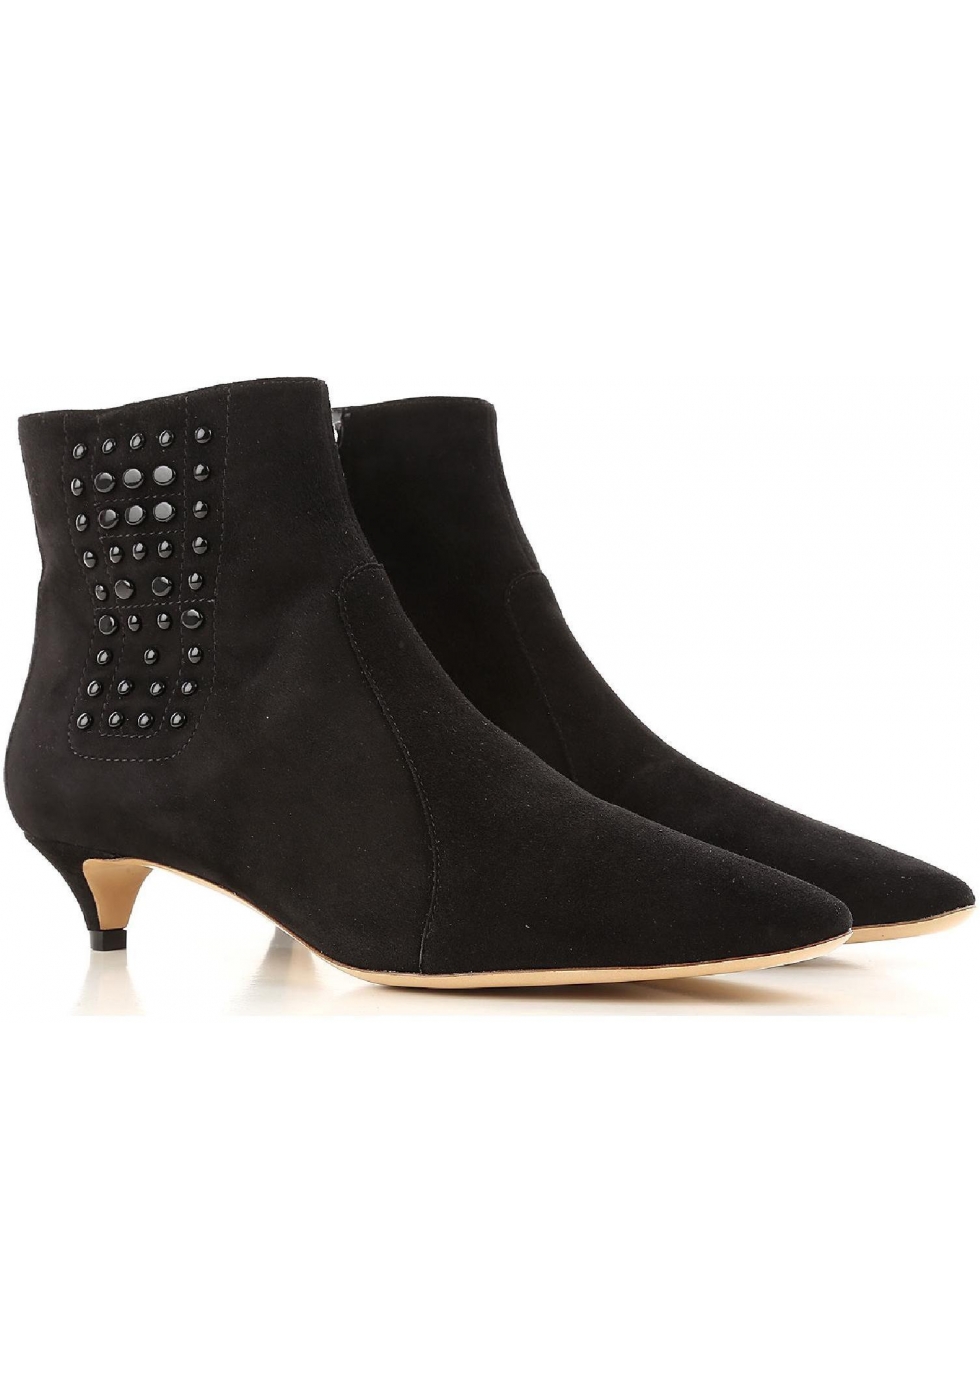 black suede boots low heel